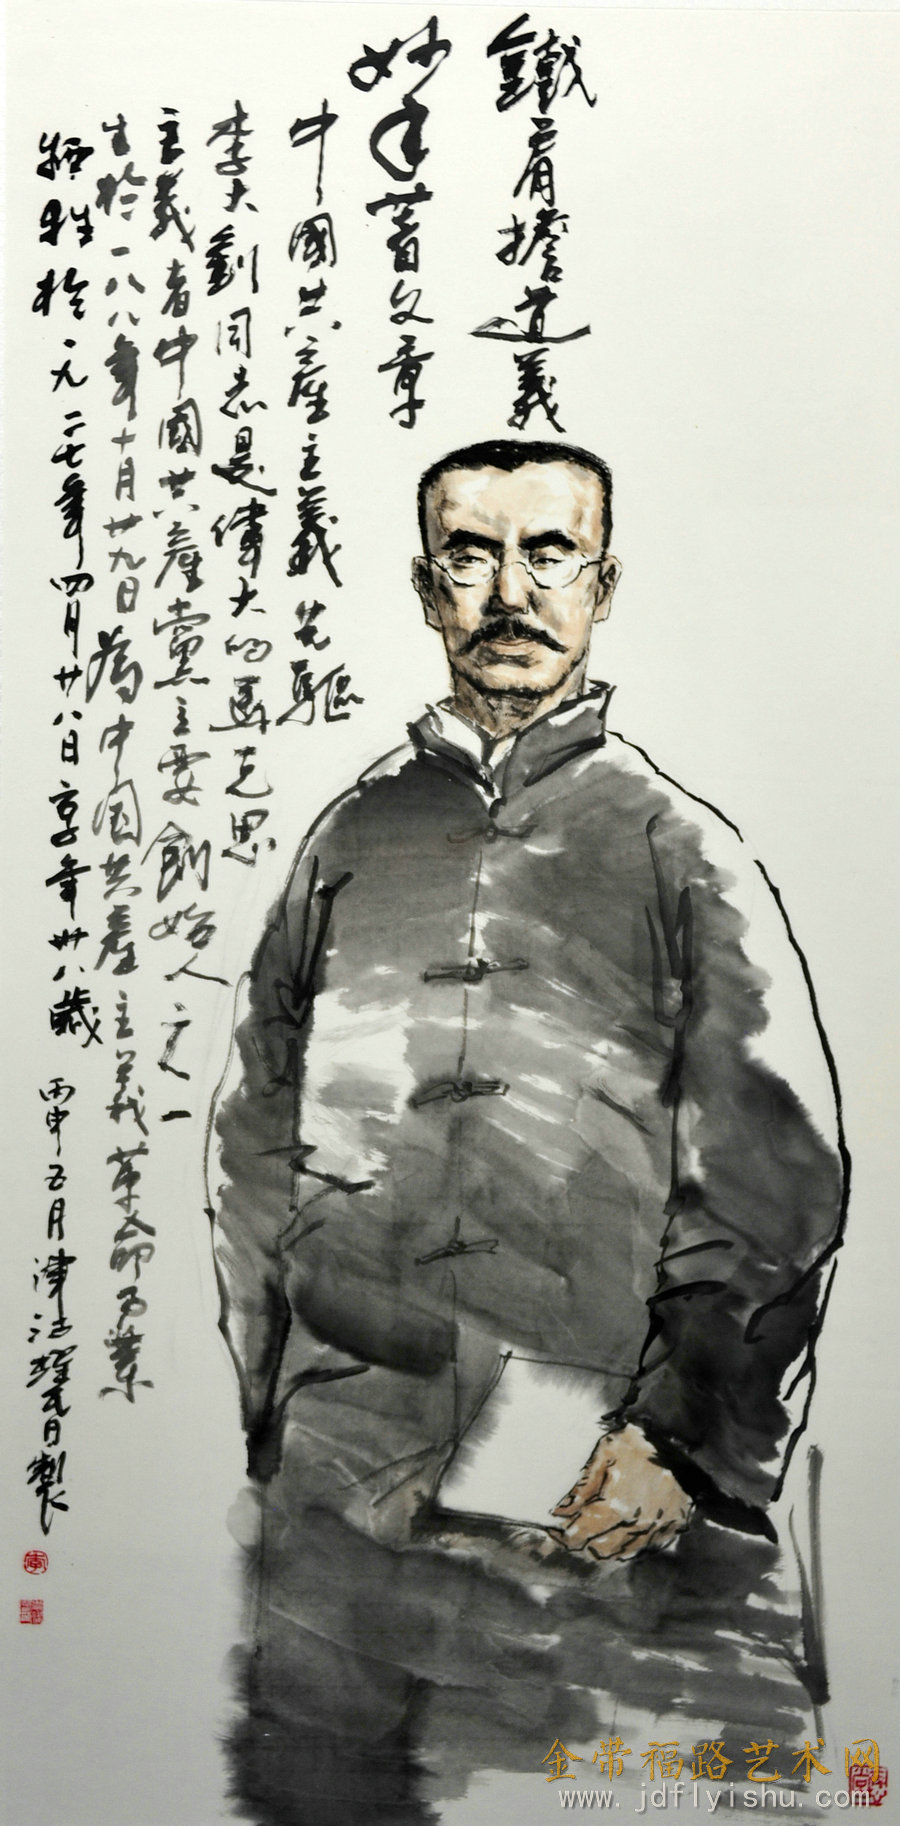 活动预告//天津市中国人物画作品展将于12月8日在